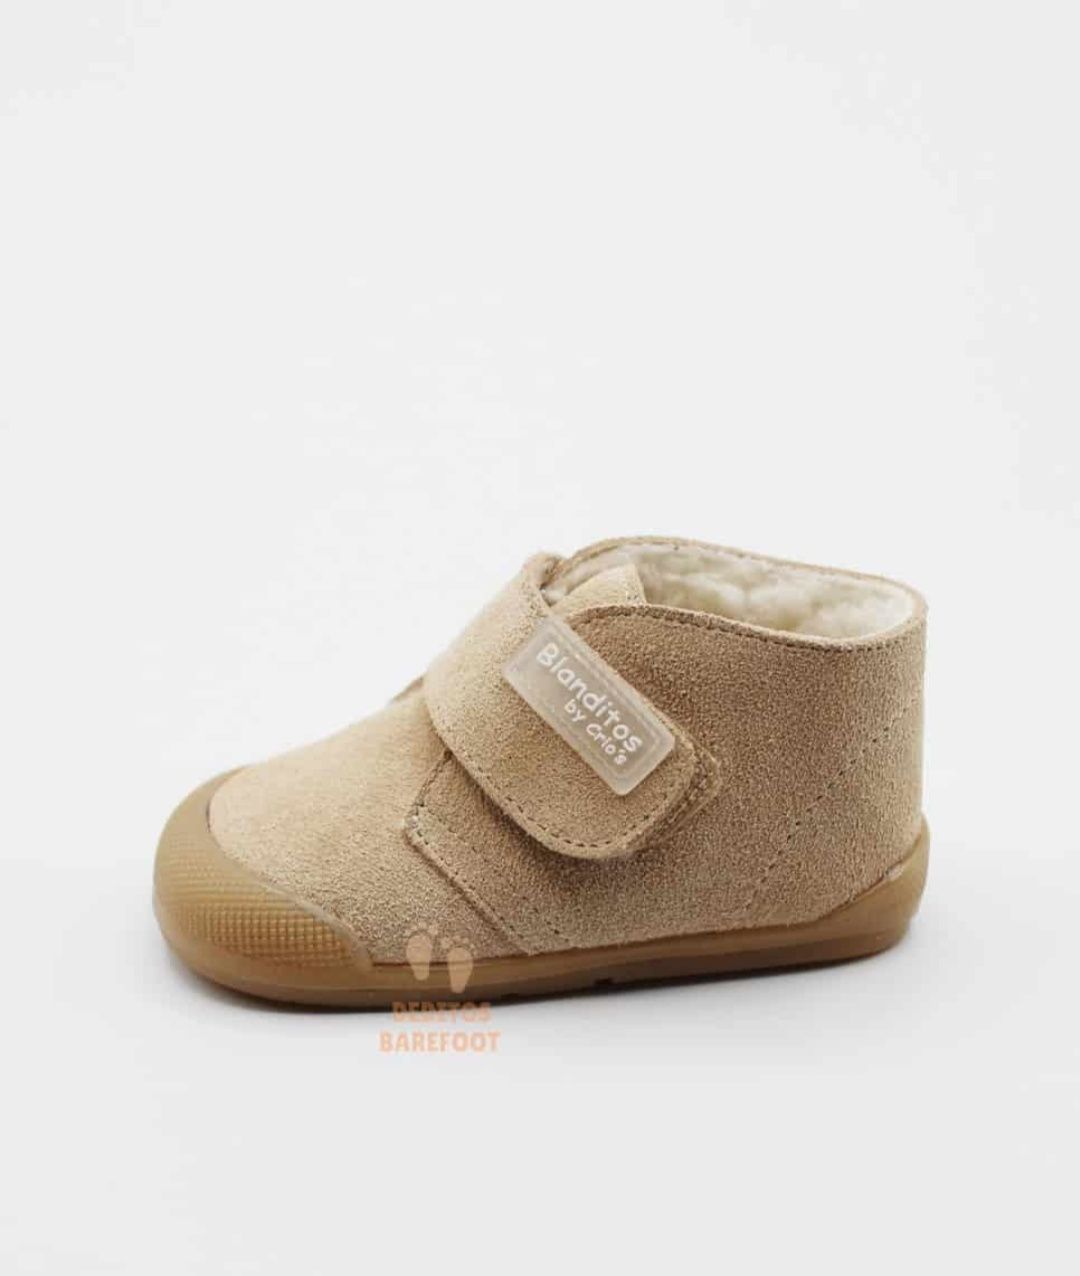 Vendo sapatos para bebé (Berafoot) 23